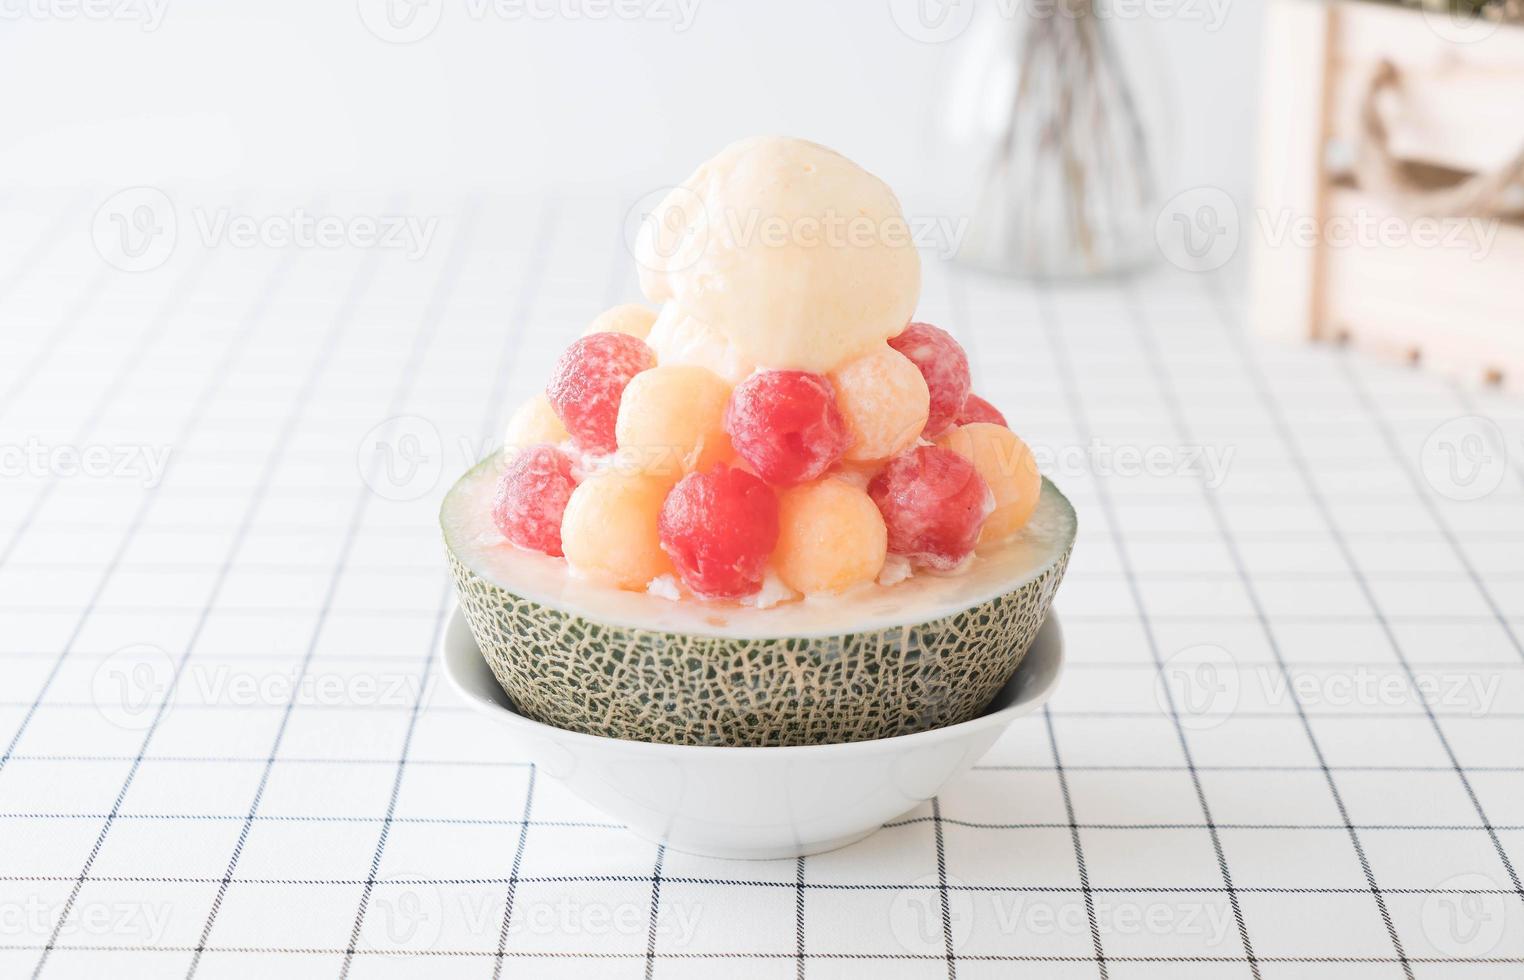 Ice melon bingsu, célèbre glace coréenne sur table photo